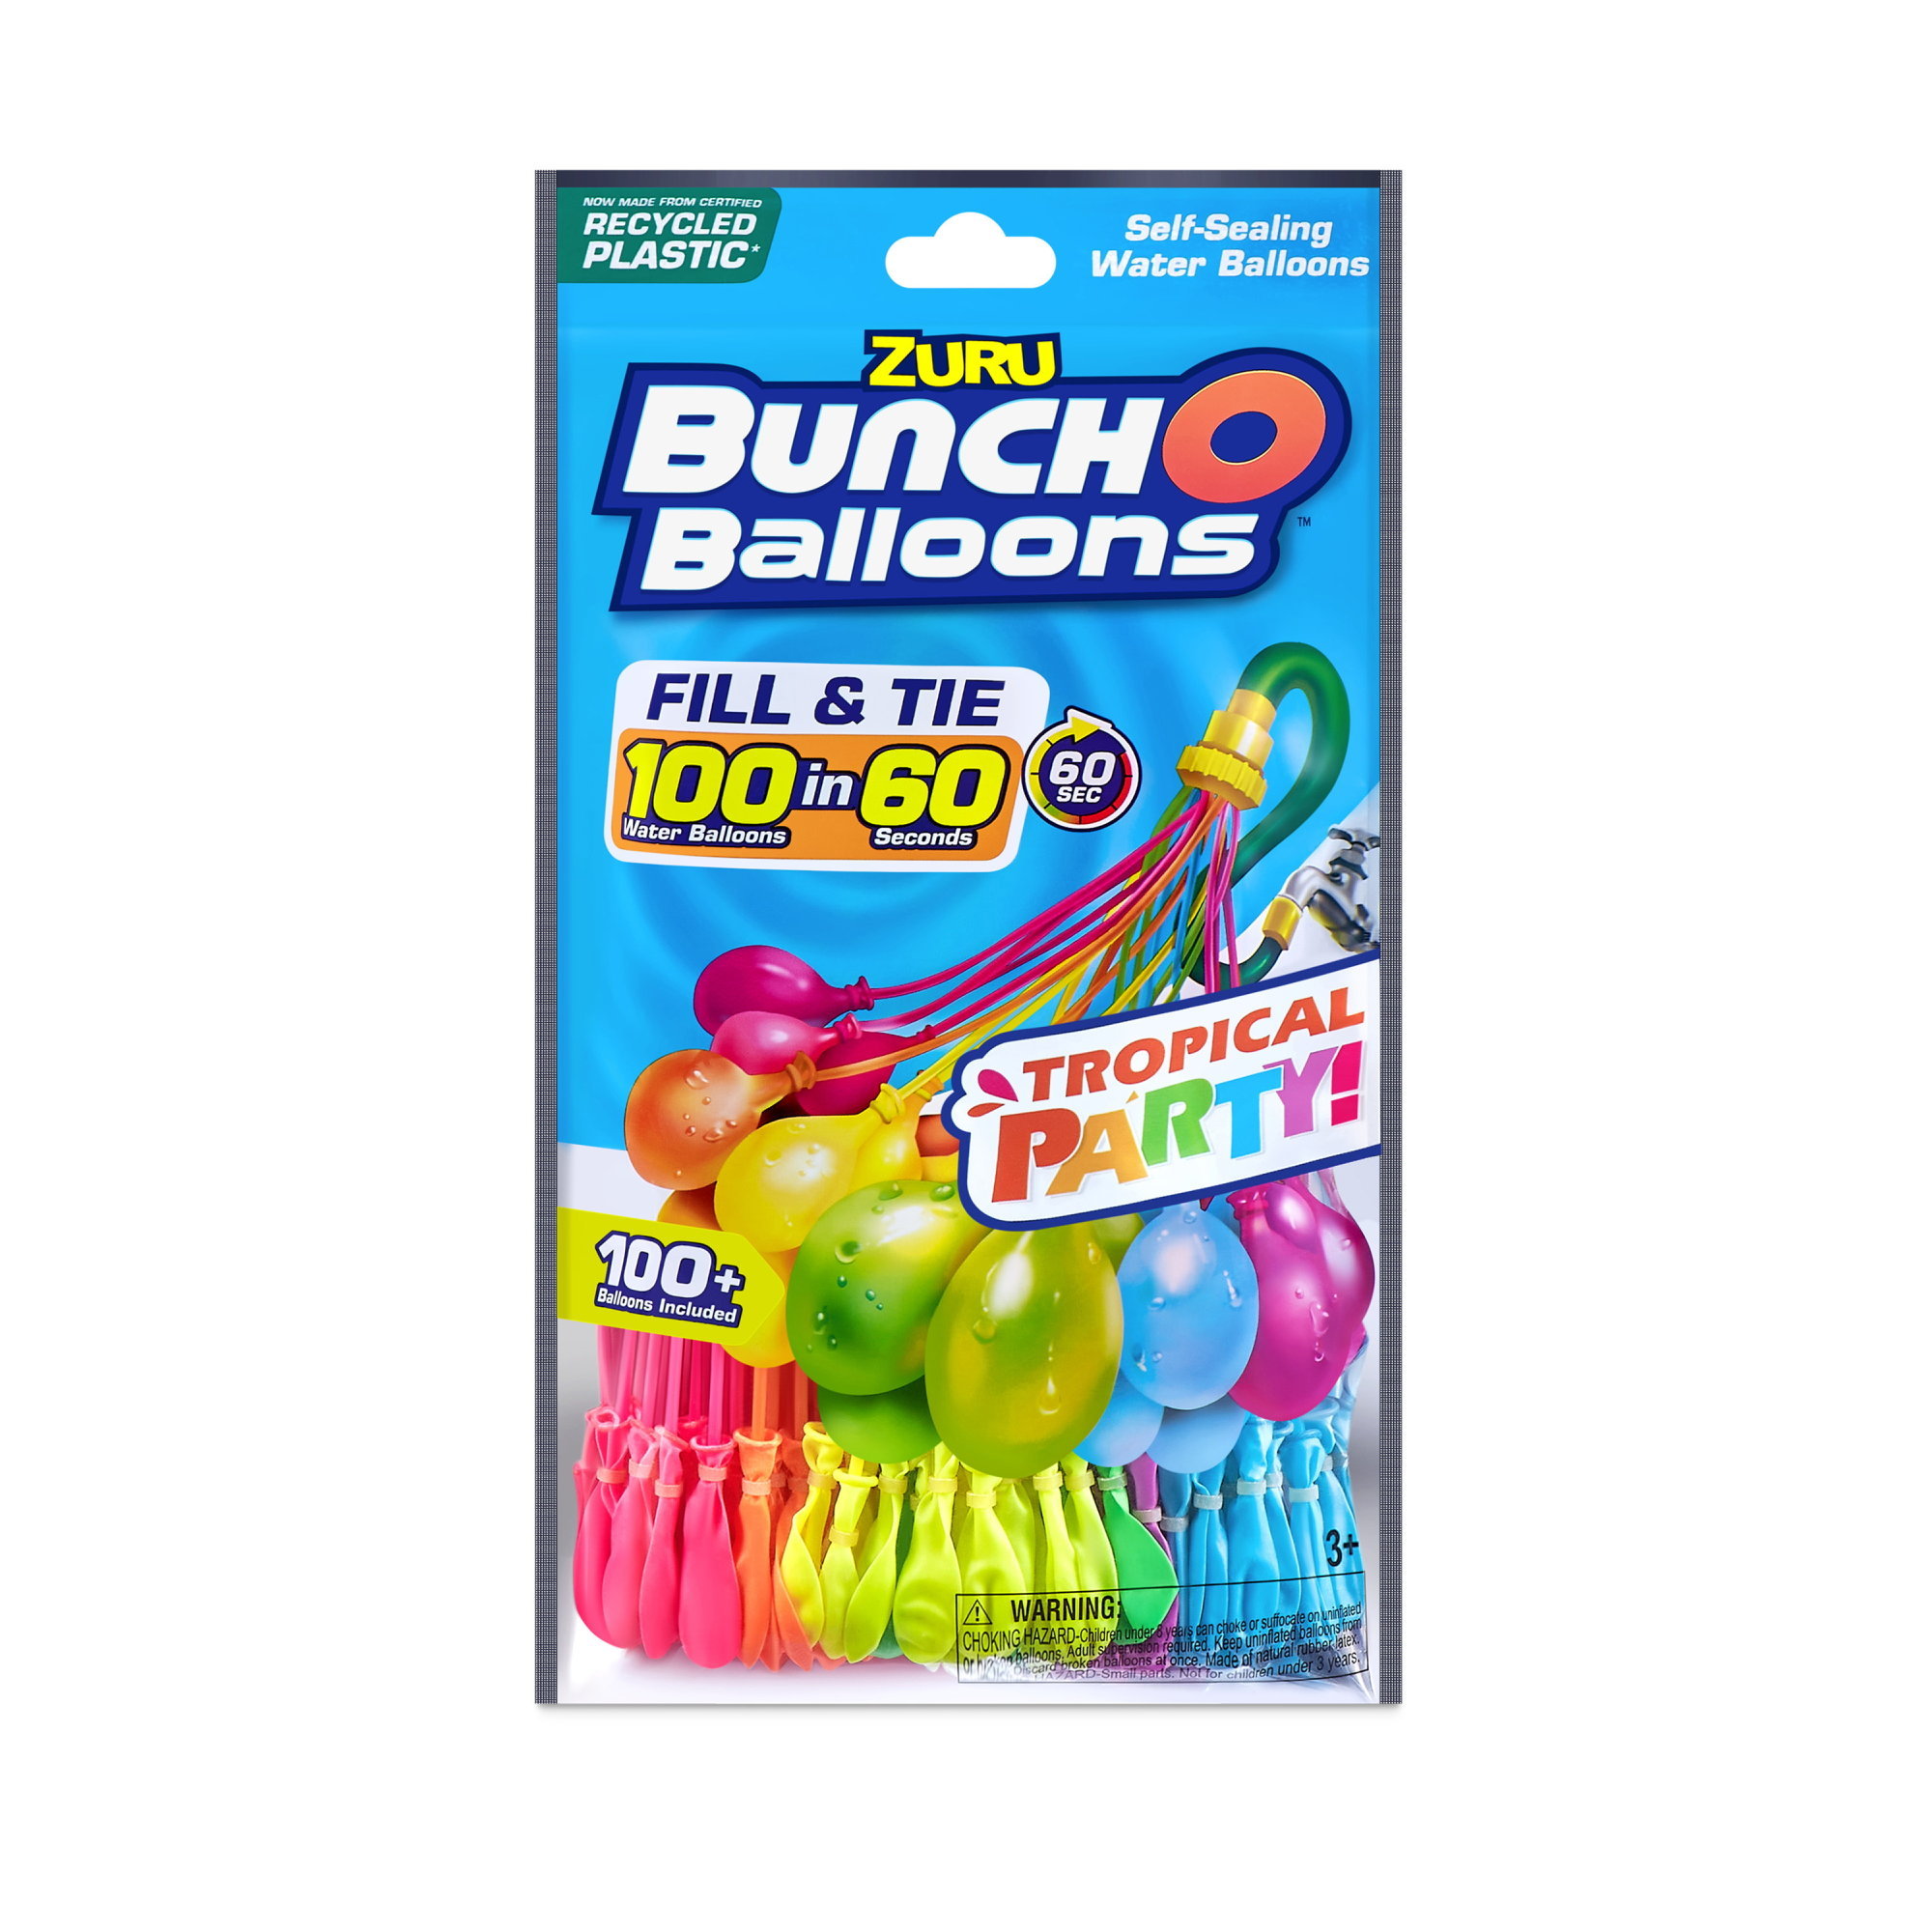 Inspiration Ende region Bunch O Balloons Tropical 100-pack – 100 selvlukkende vandballoner